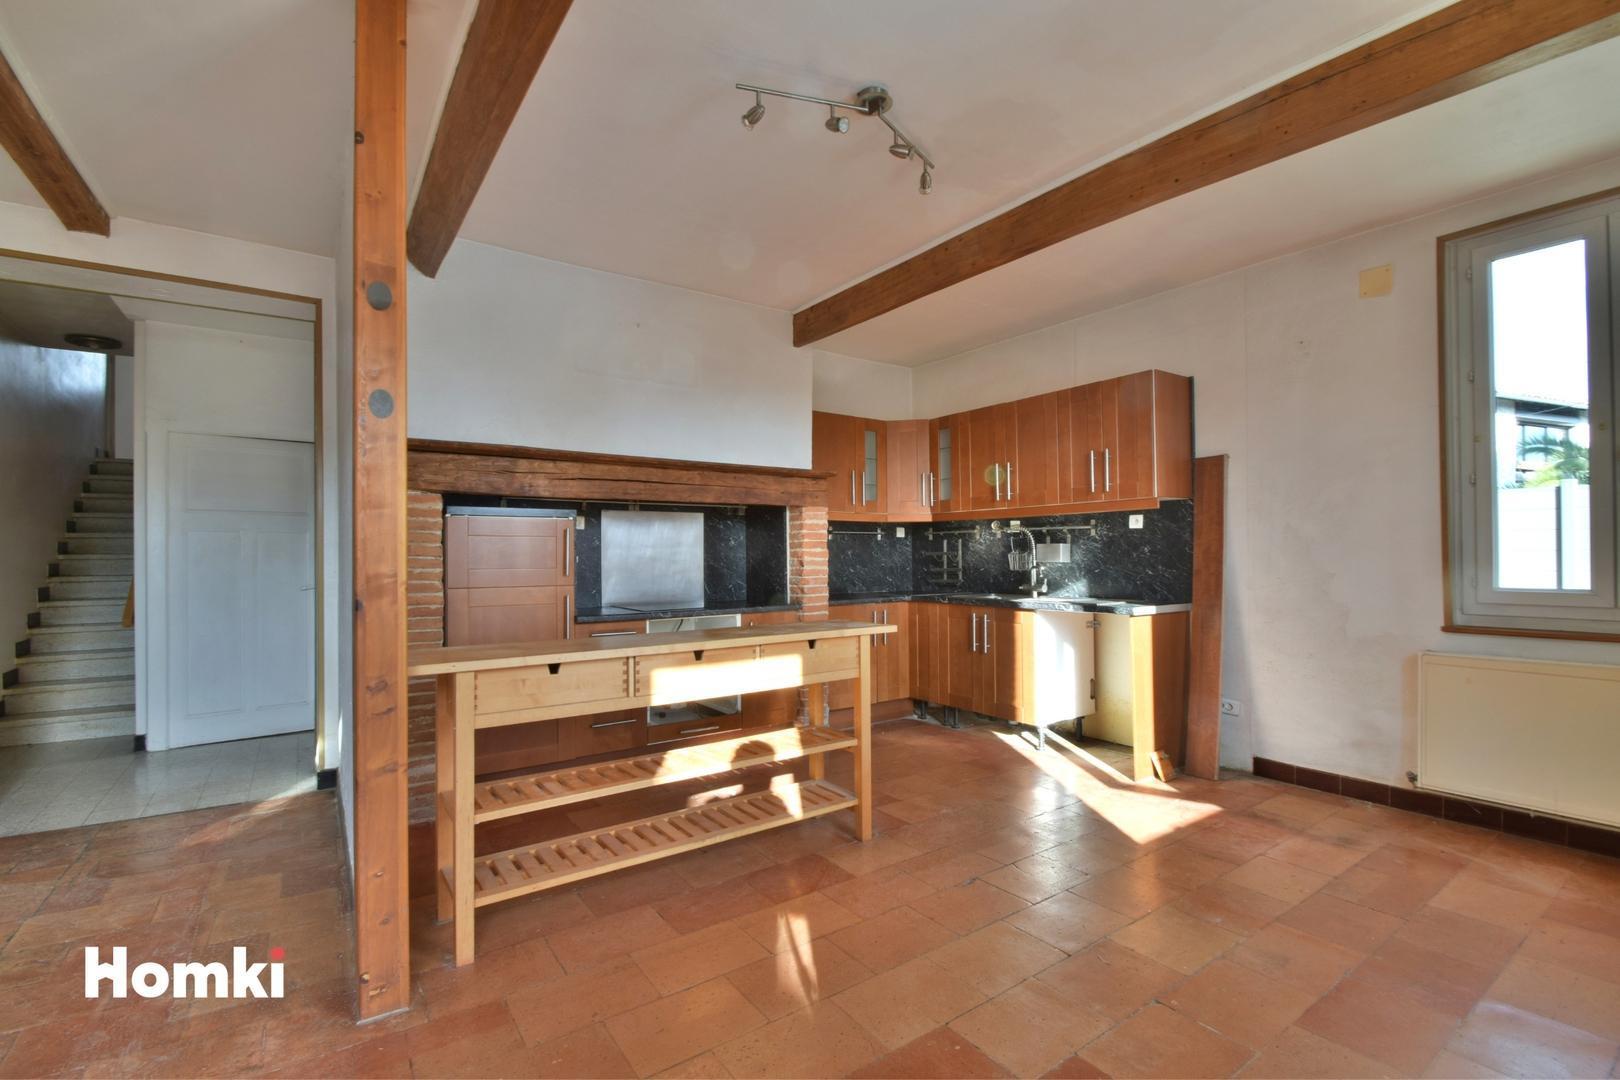 Homki - Vente Maison/villa  de 140.0 m² à Saint-Nicolas-de-la-Grave 82210